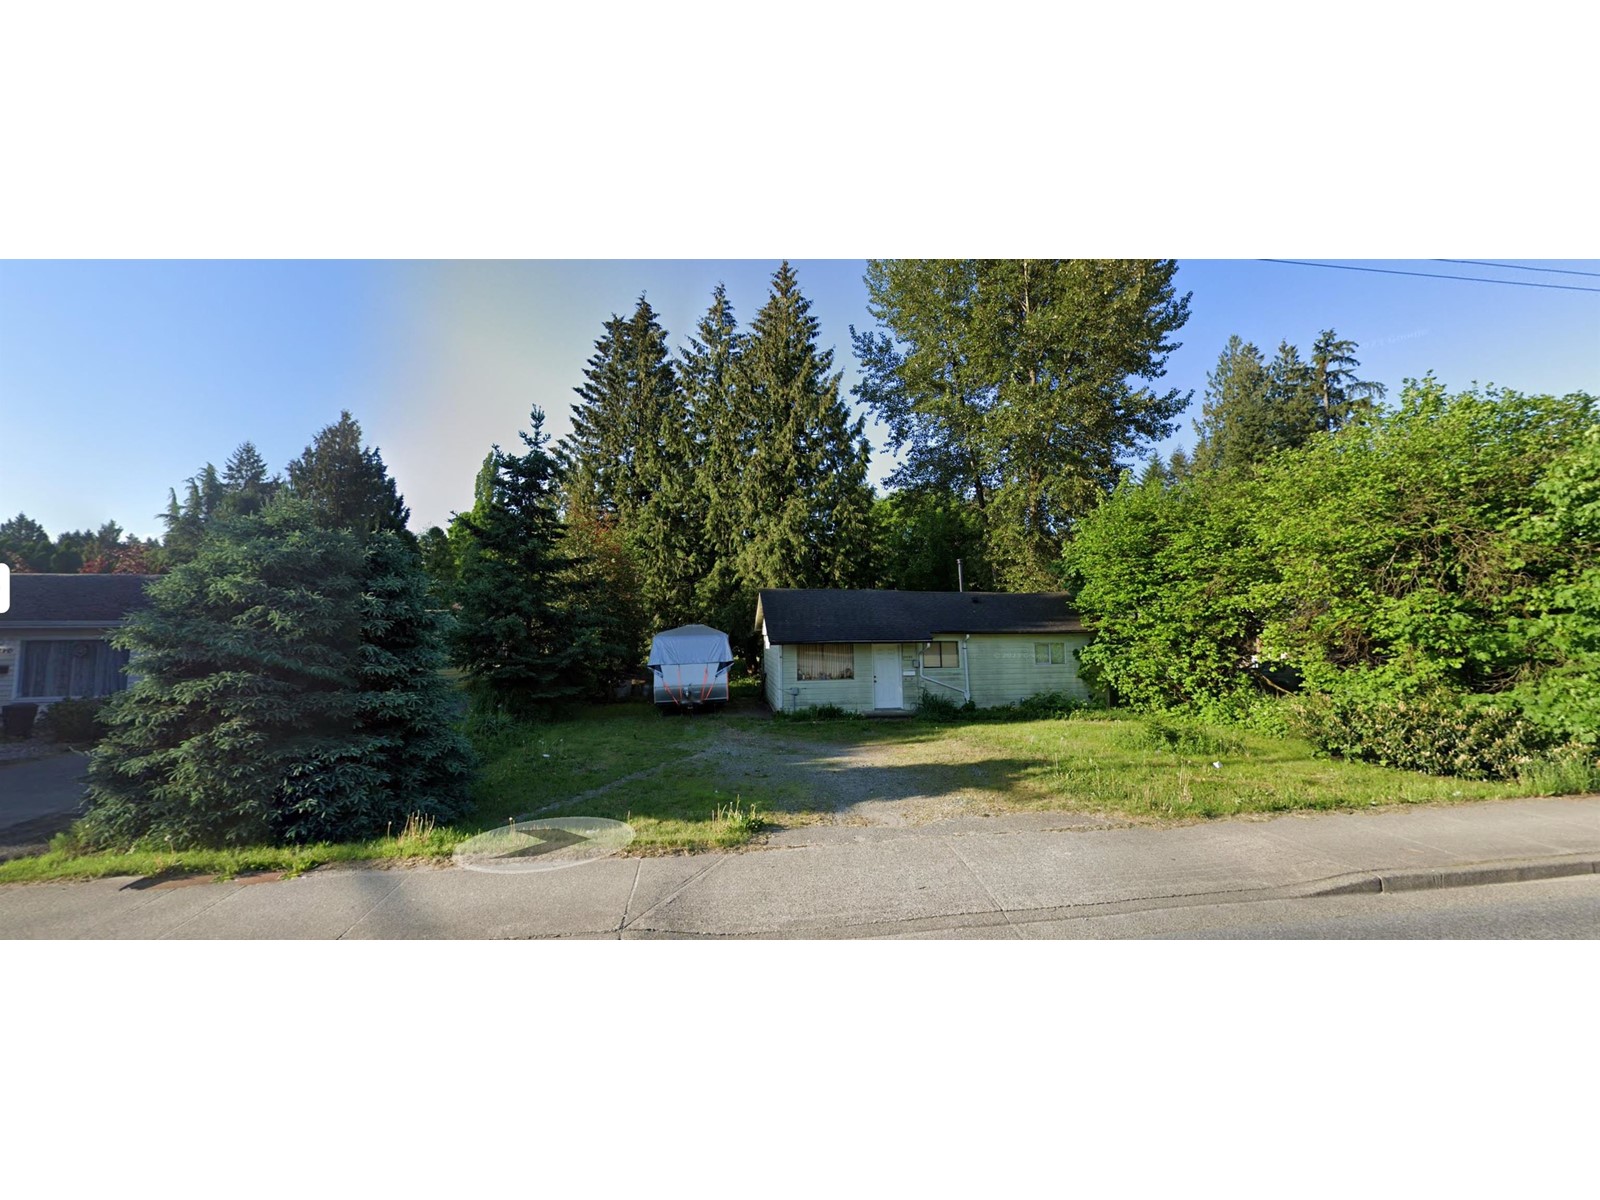 2 Bedroom Residential Home For Sale | 21130 Dewdney Trunk Road | Maple Ridge | V2X3E9